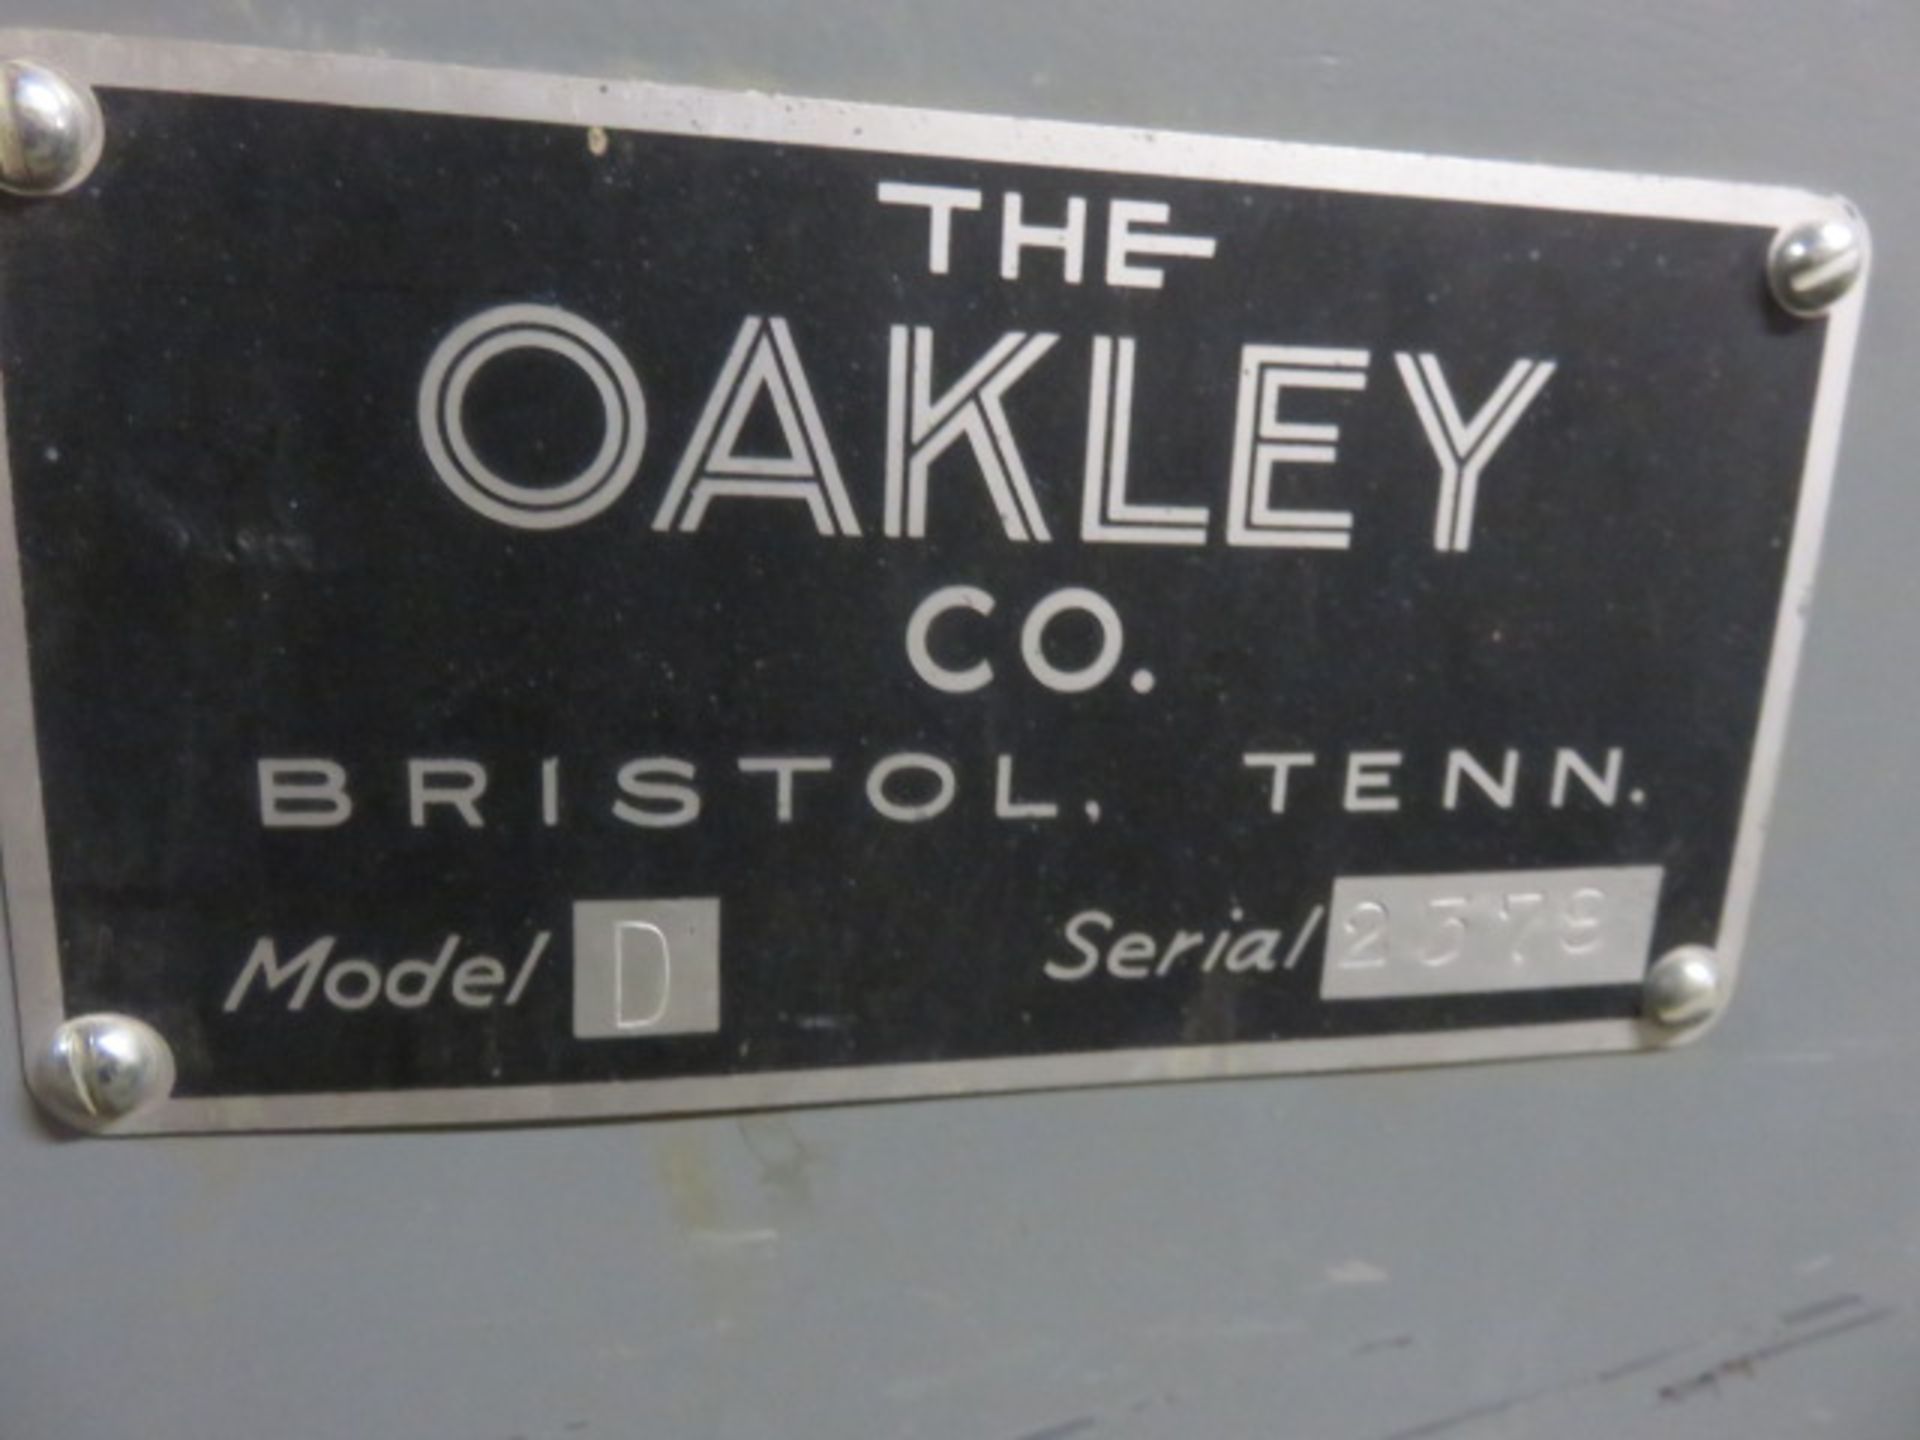 OAKLEY MODEL D STROKE SANDER, S/N 2378, 154 IN, 5HP, 3PH, 36 IN. x 81 IN. rolling table, 230/460V... - Image 2 of 3